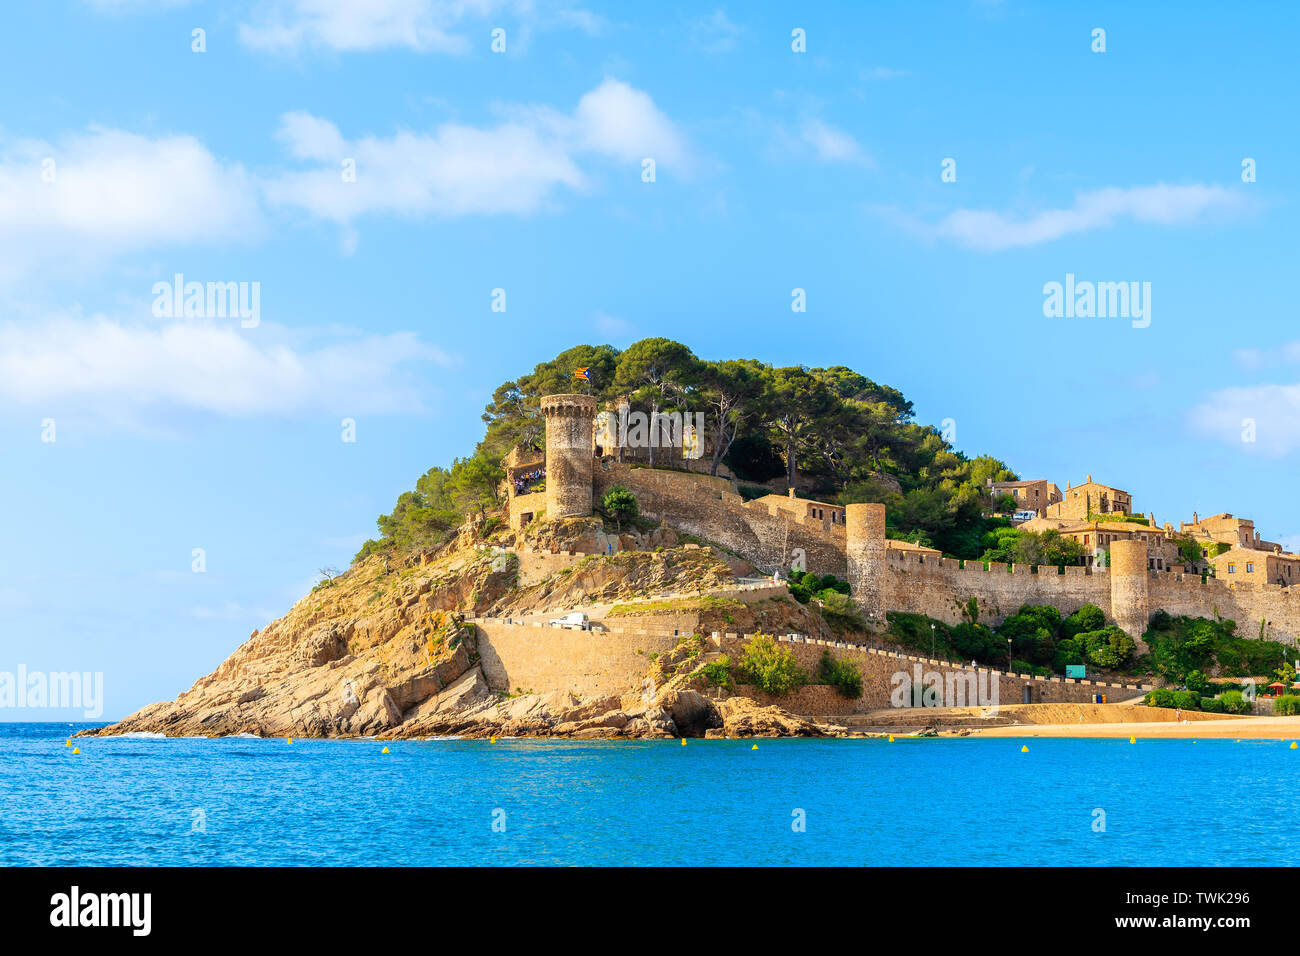 Blau azurblaue Meer und Blick auf die Burg in Tossa de Mar, Costa Brava, Spanien Stockfoto